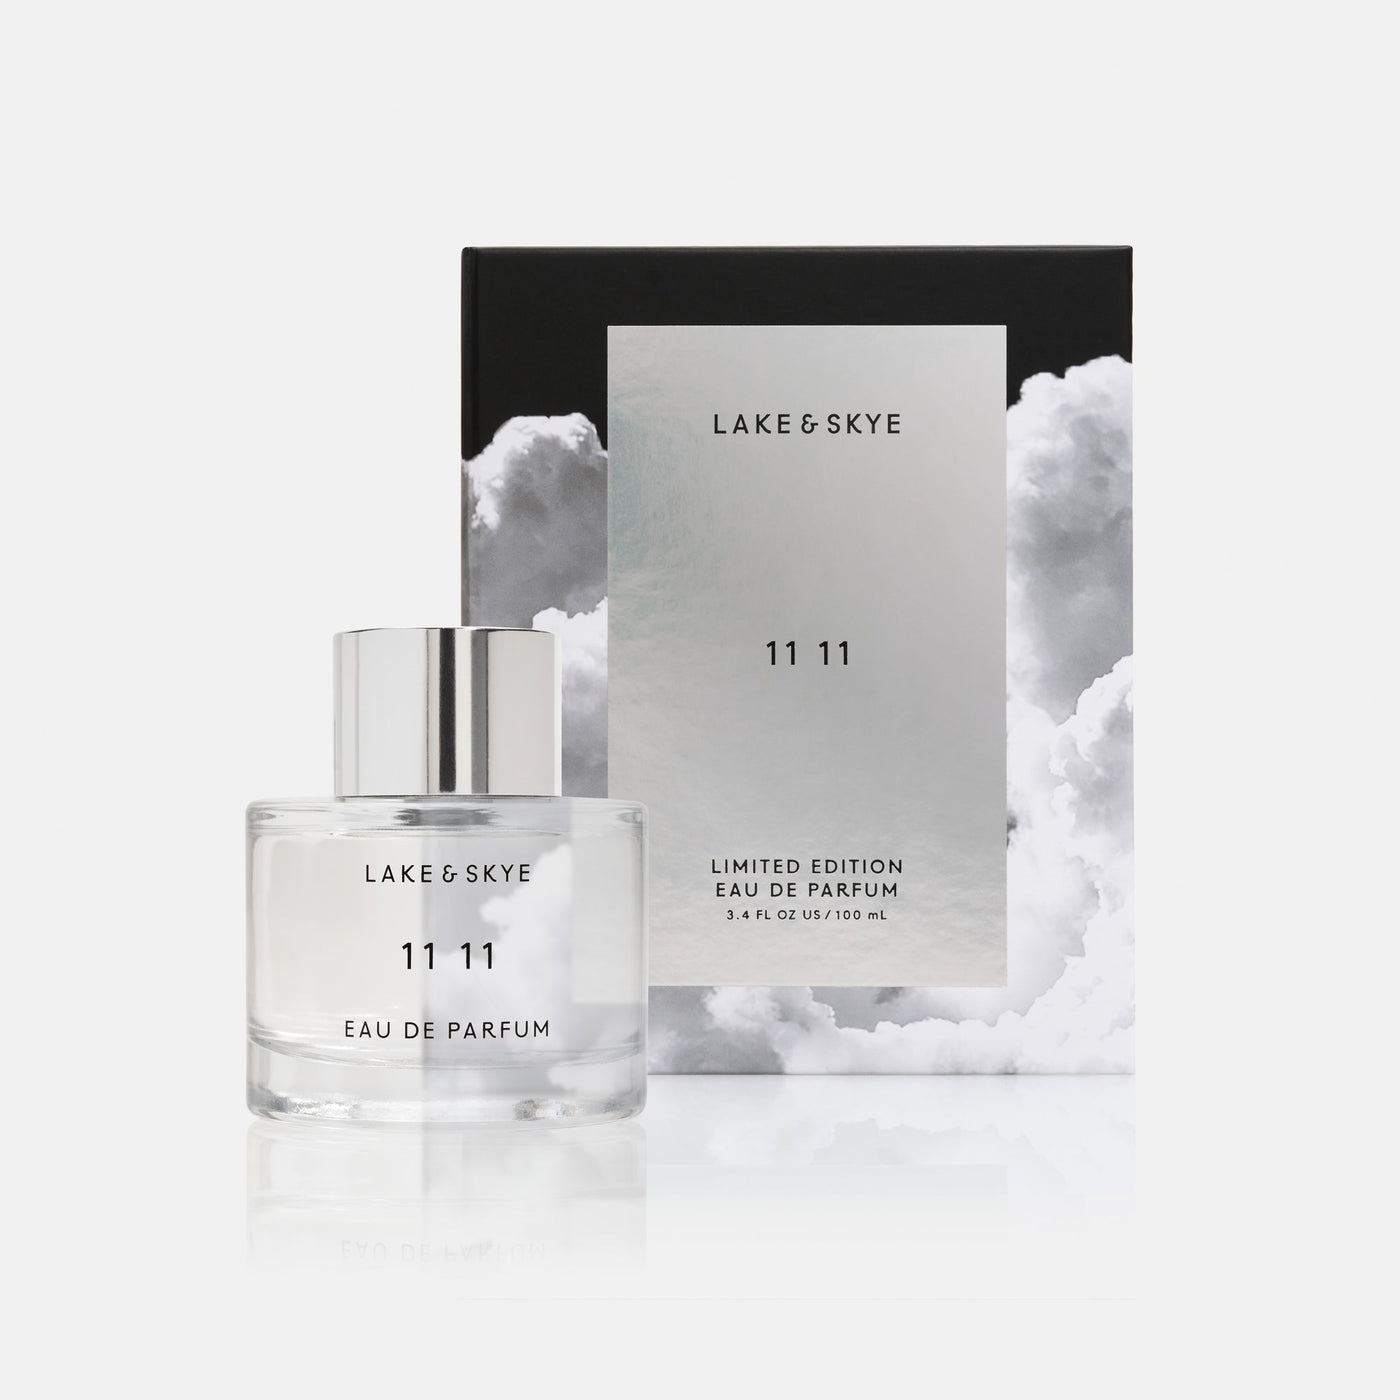 Lake & Skye Limited Edition 3.4 oz 11 11 Eau de Parfum